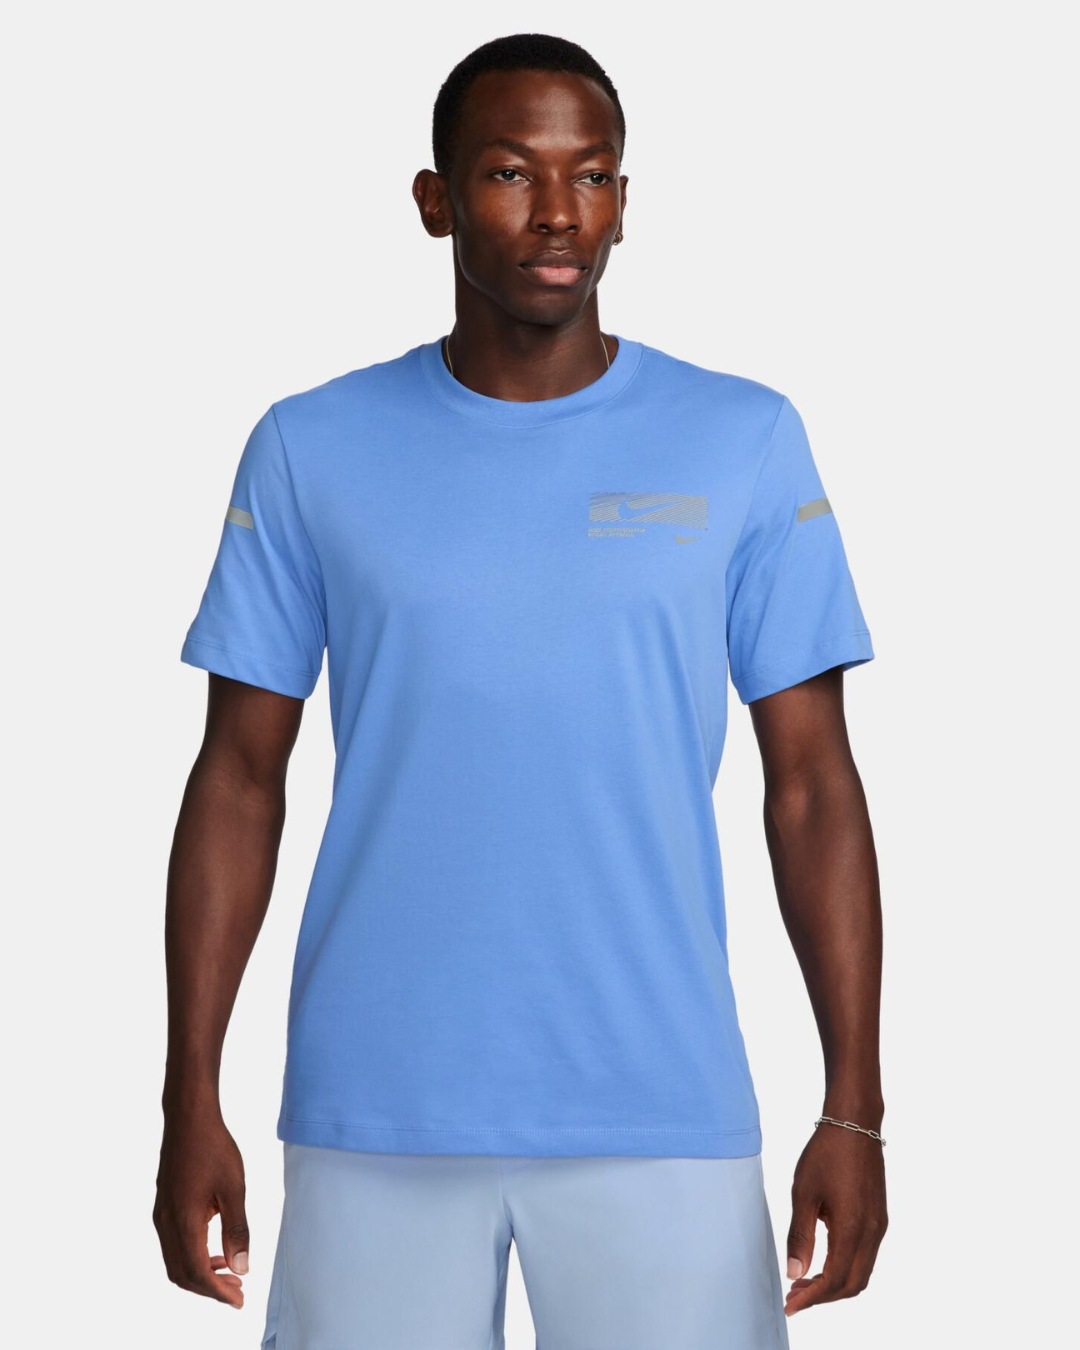 Nike Dri-FIT T-shirt - Blue